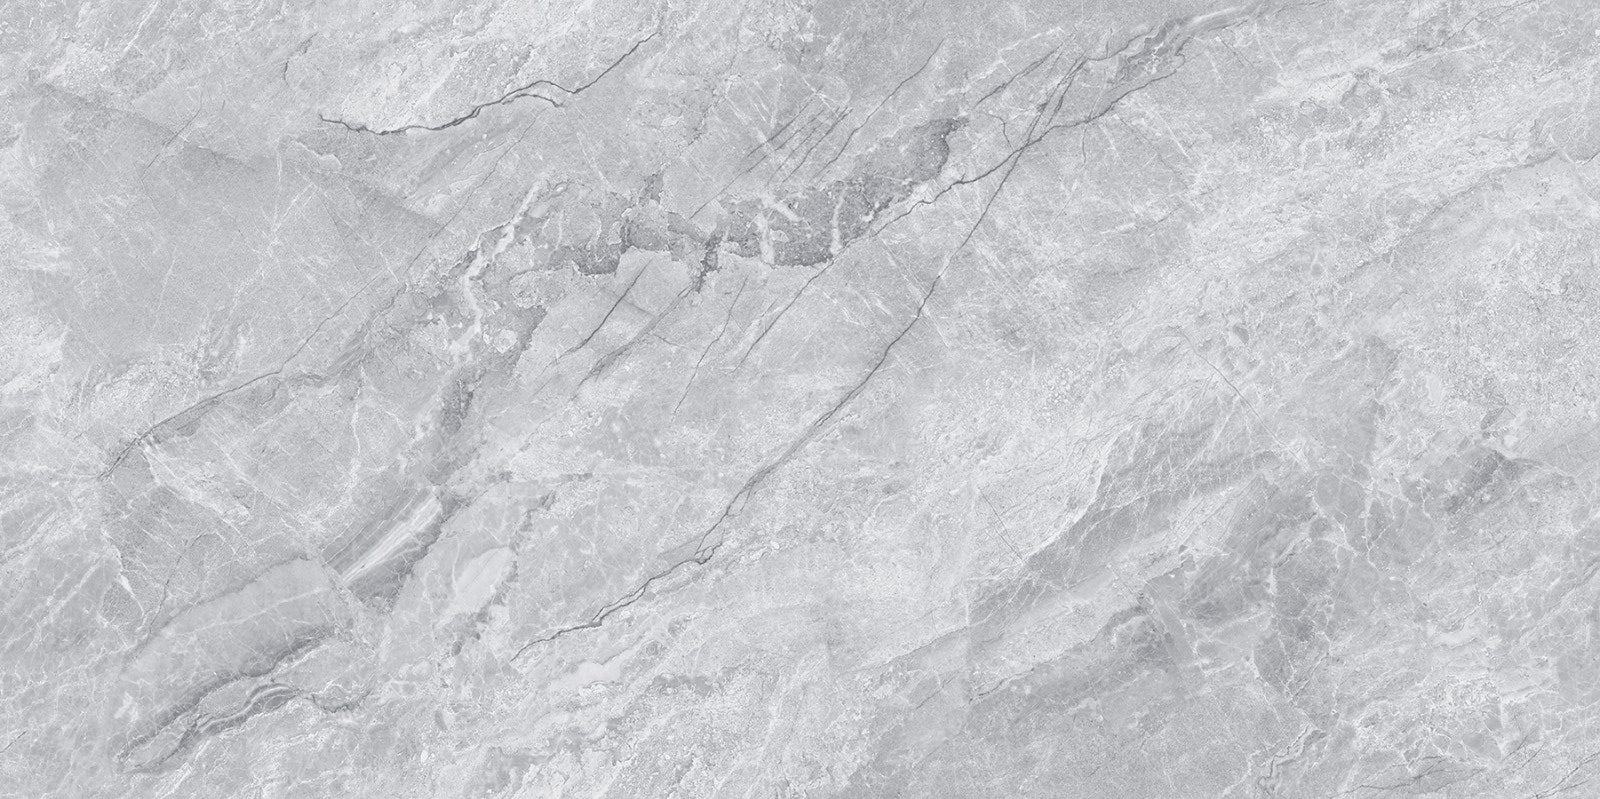 中國佛山瓷磚 China Foshan Marble Tiles Glossy 大理石瓷磚 連紋瓷磚 地磚 墻磚 釉面磚 亮光面 風間岩GT715032 75×150cm